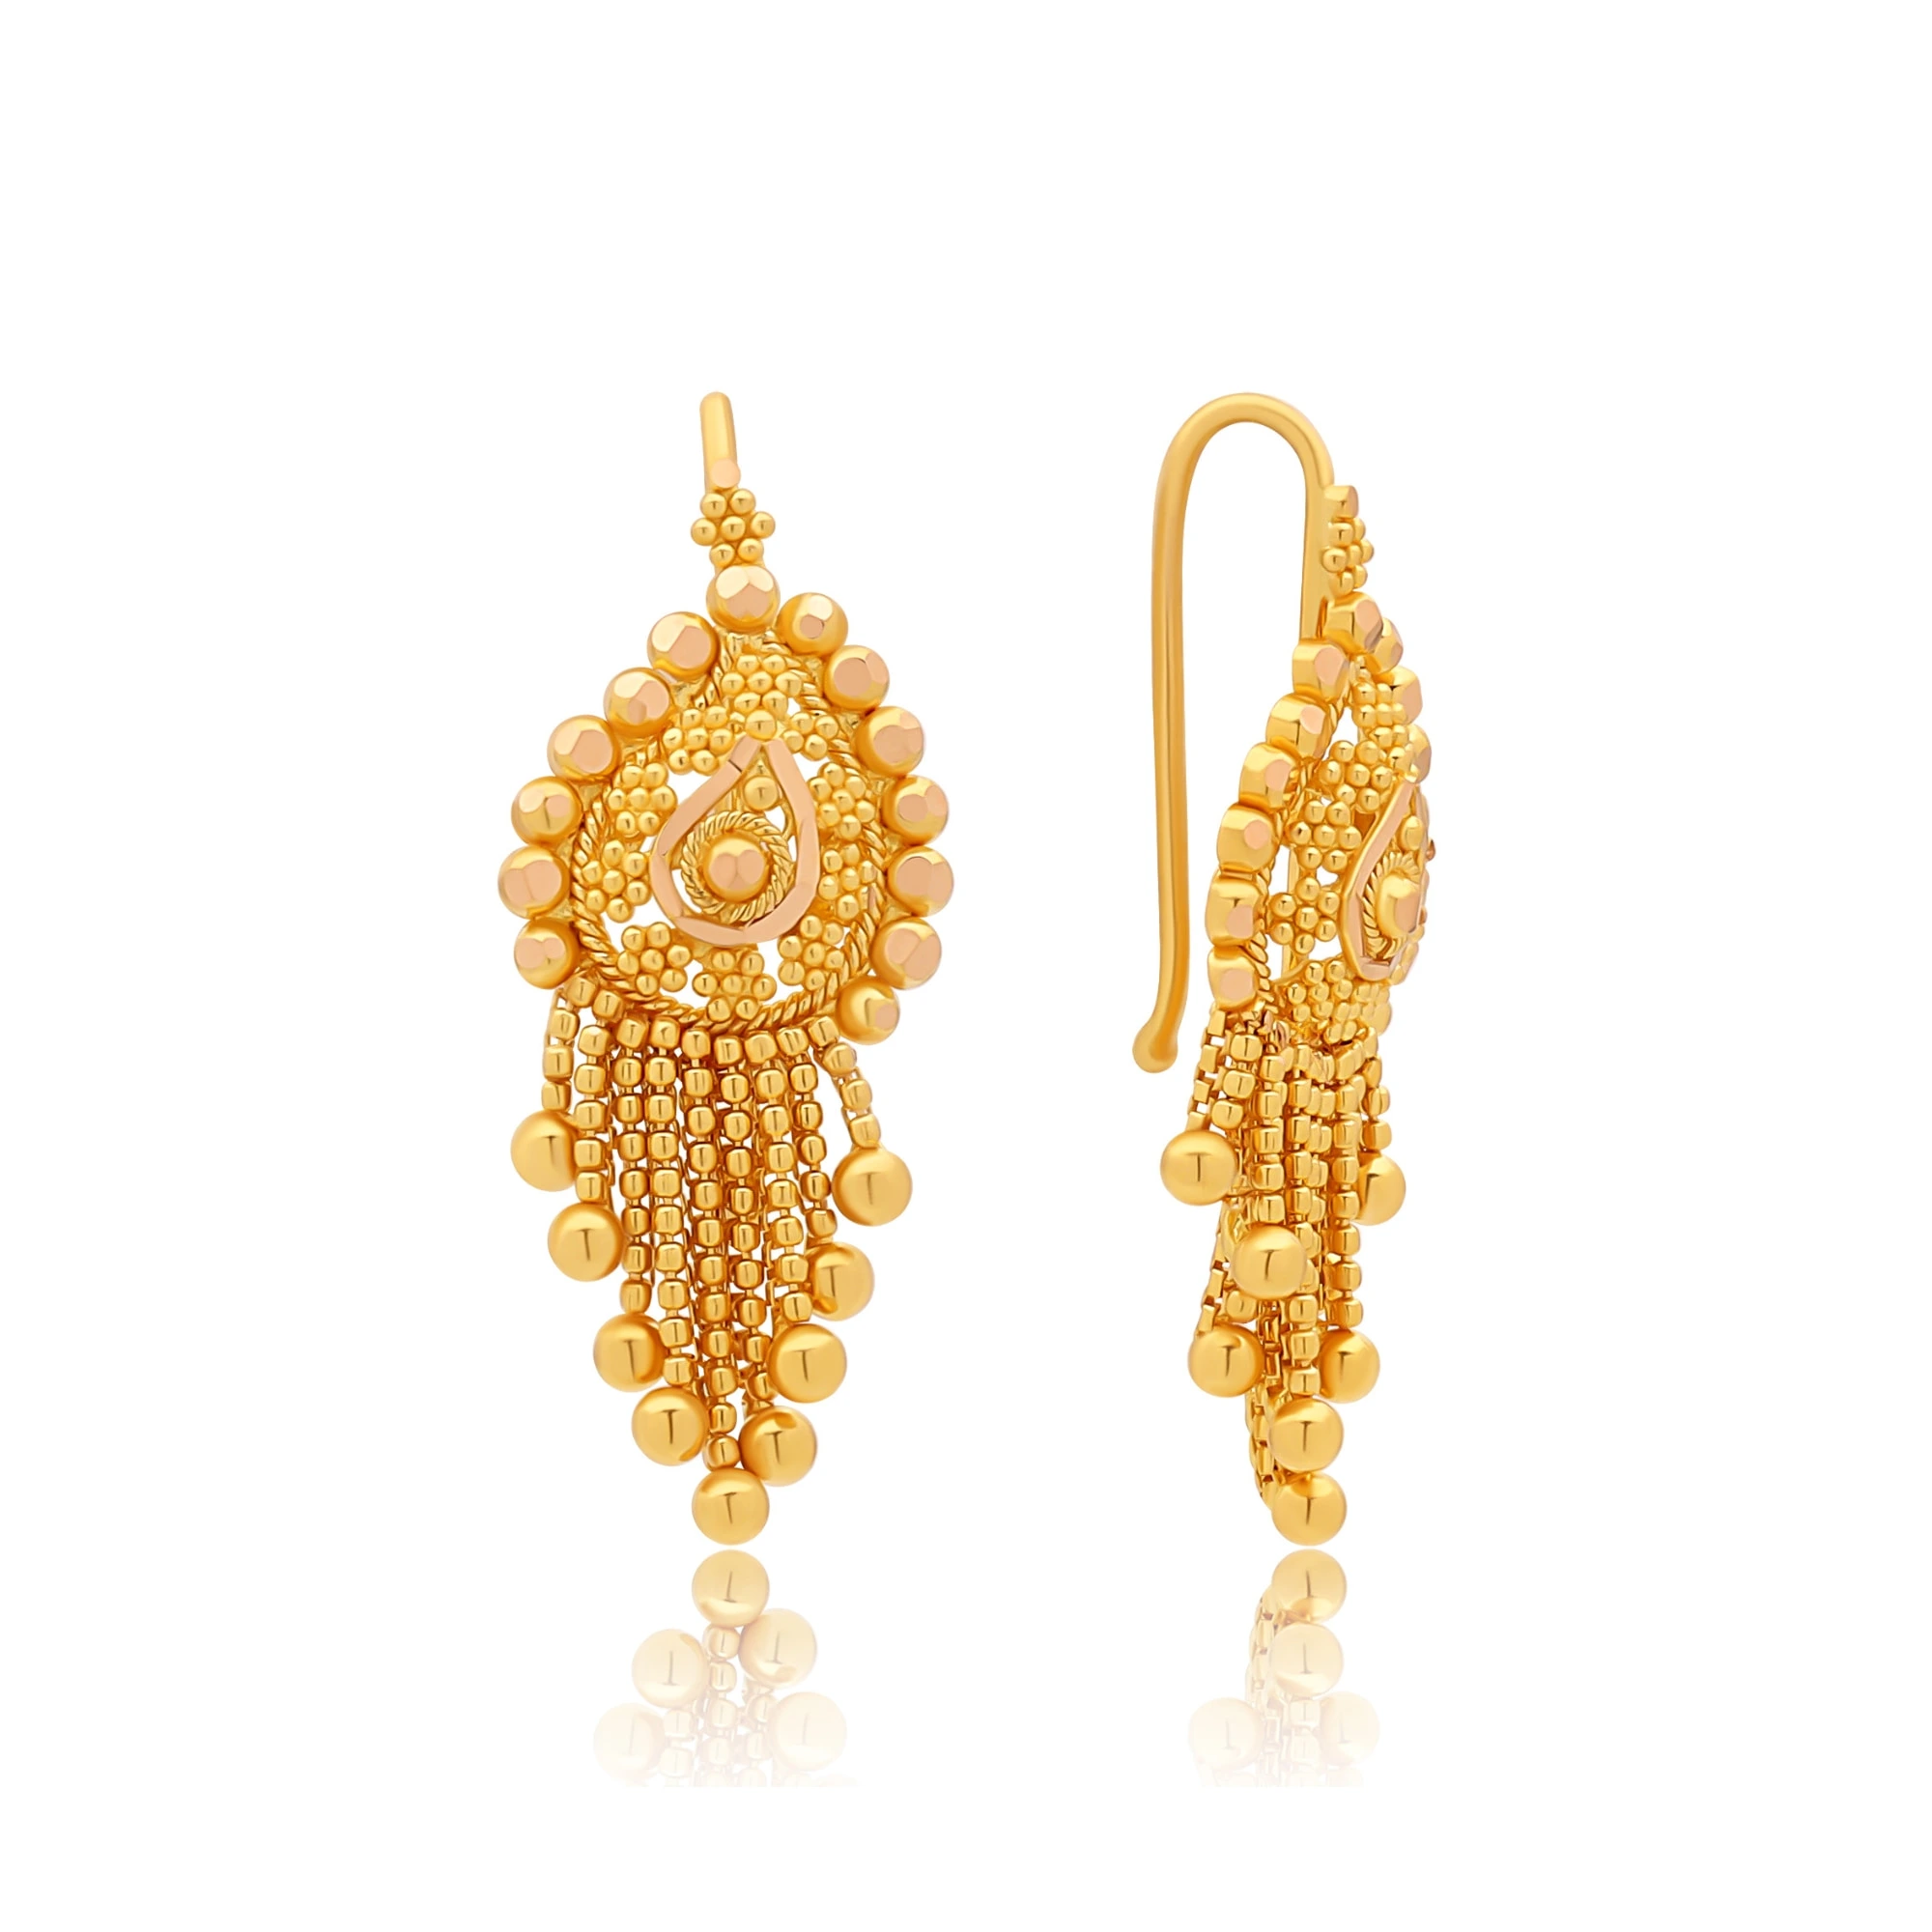 Buy Gold Earrings Online At Best Price P N Gadgil & Sons